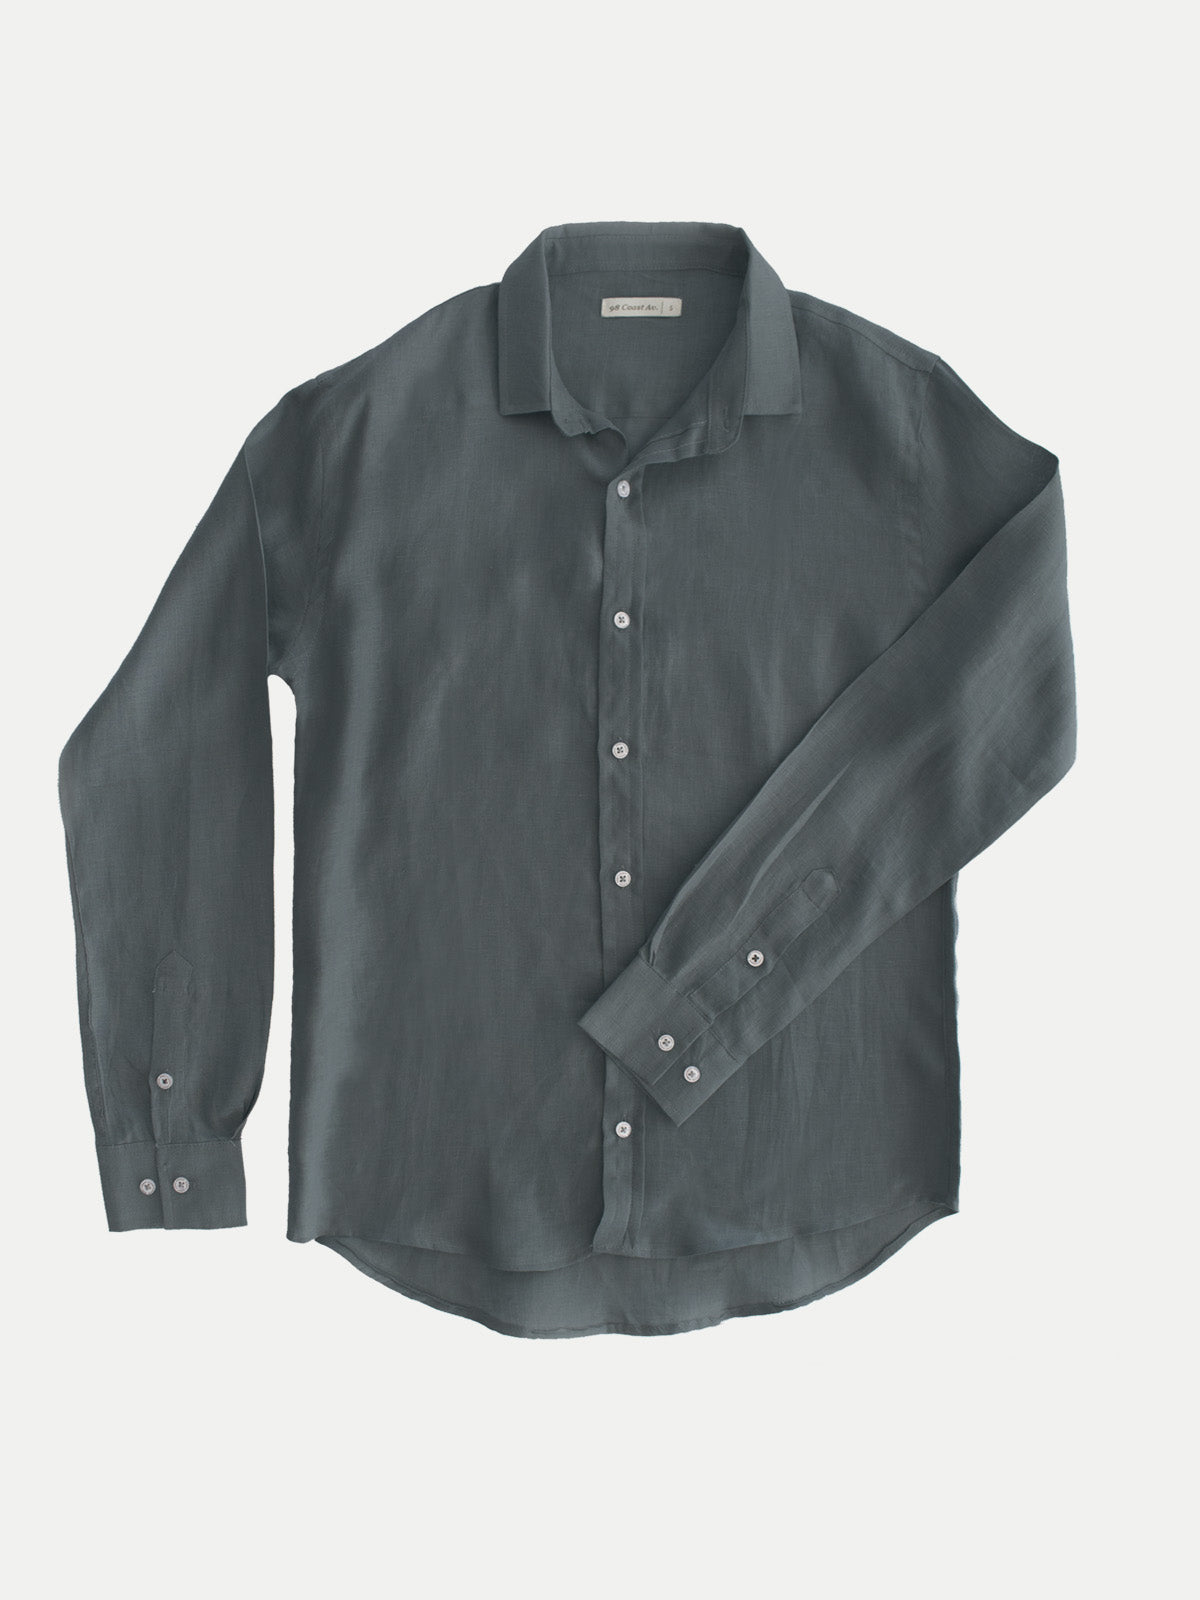 100% Linen Shirt Dark Grey by 98 Coast Av.